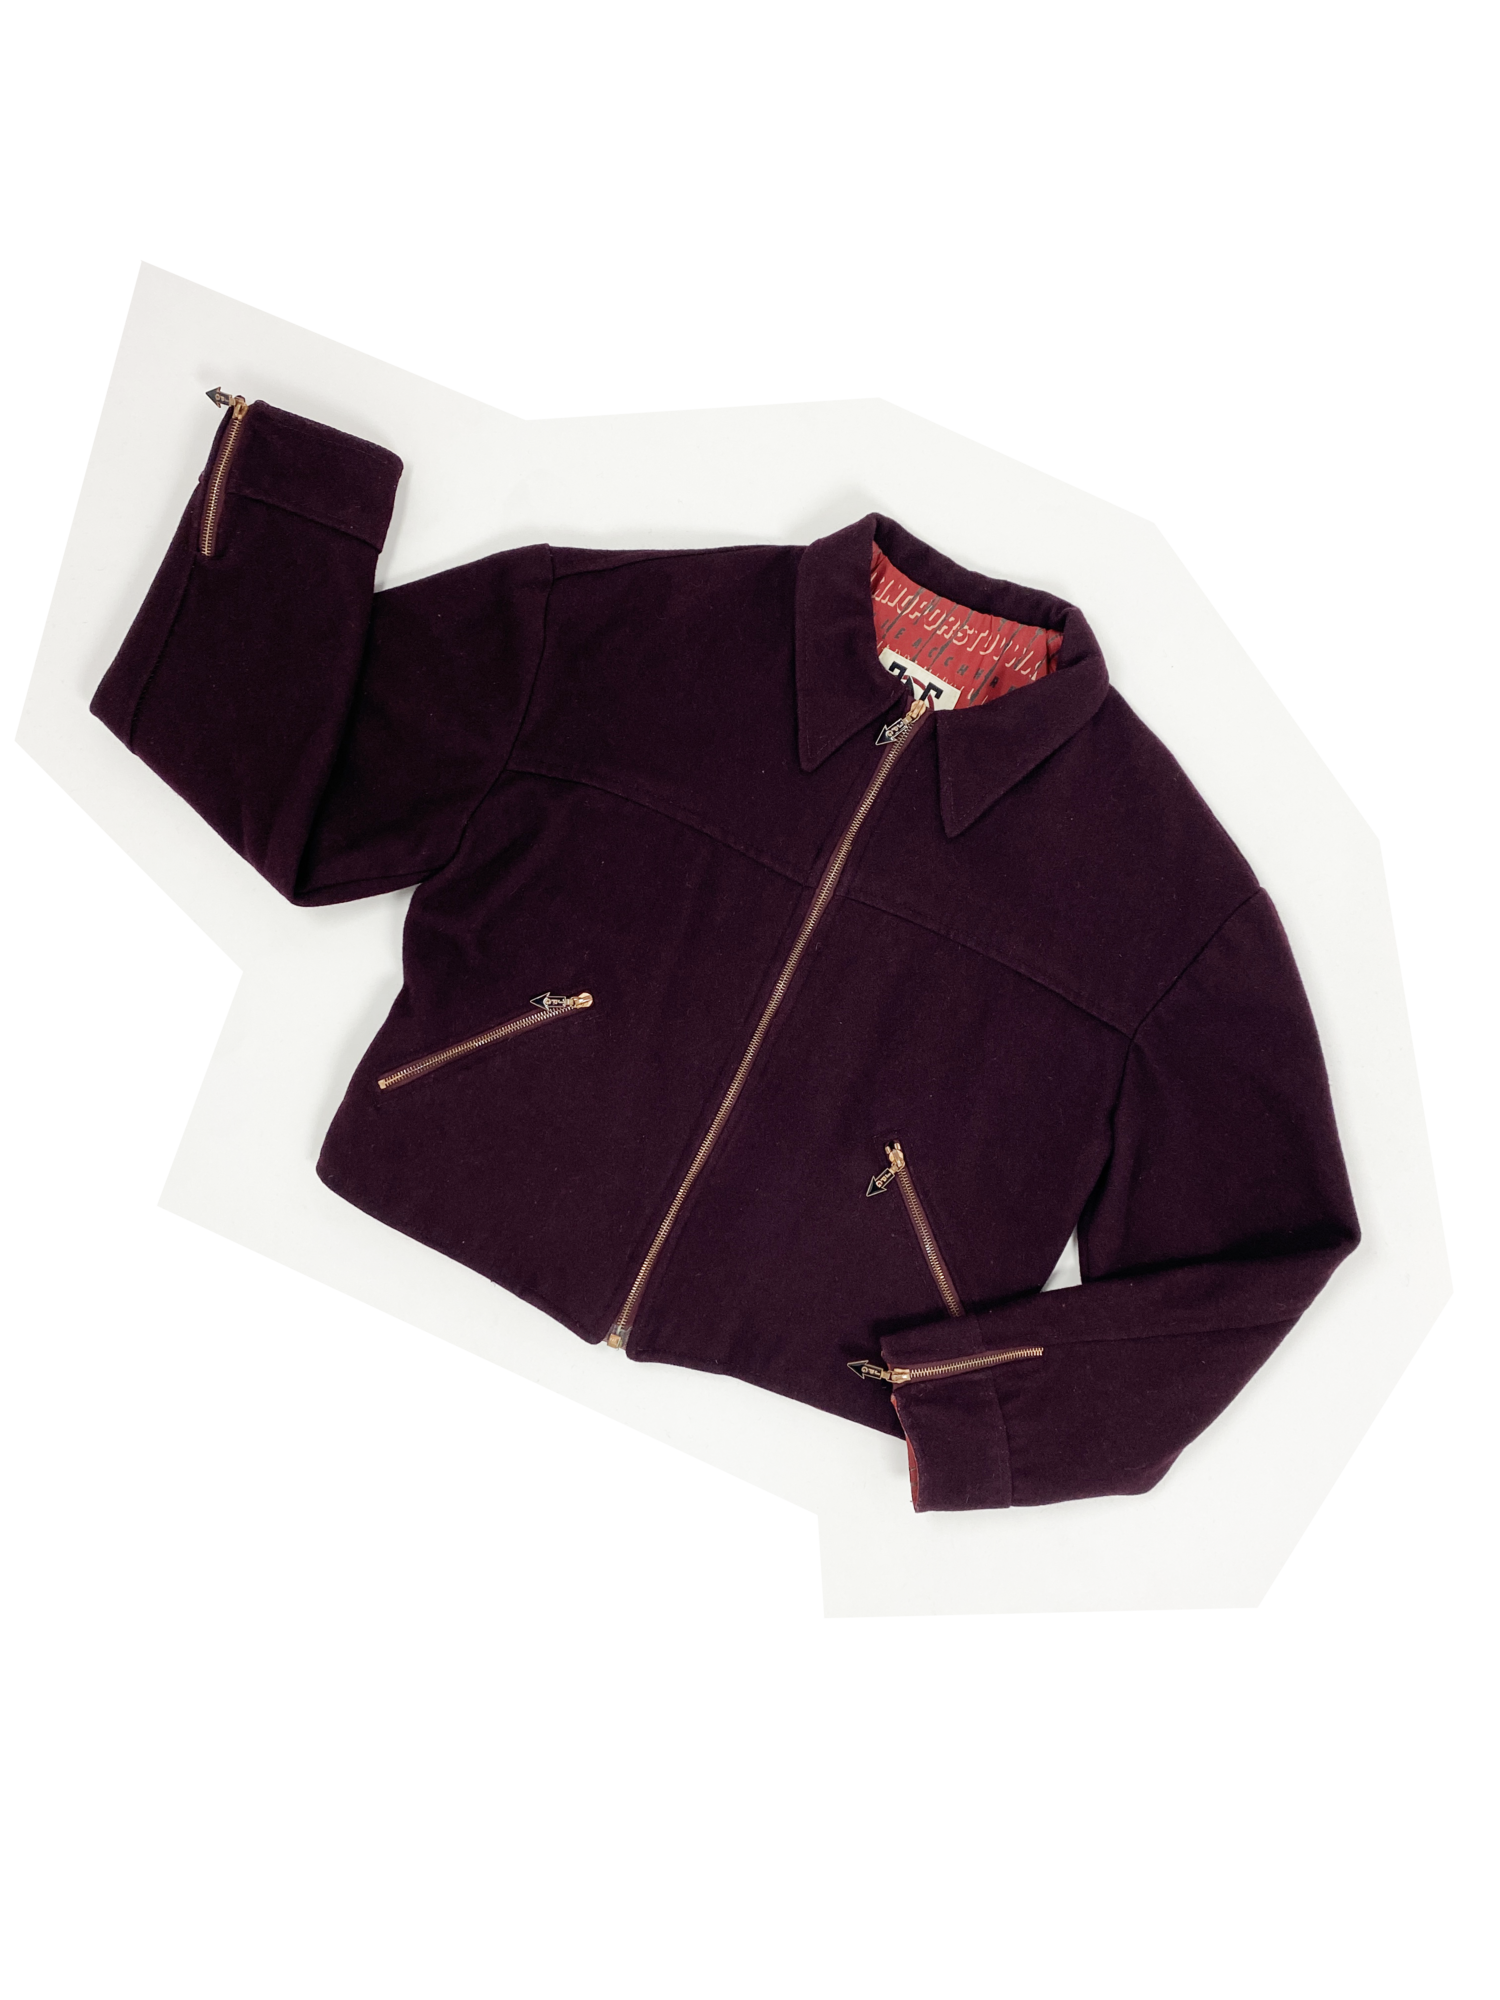 Jean Paul Gaultier 90s wool zip jacket — JAMES VELORIA